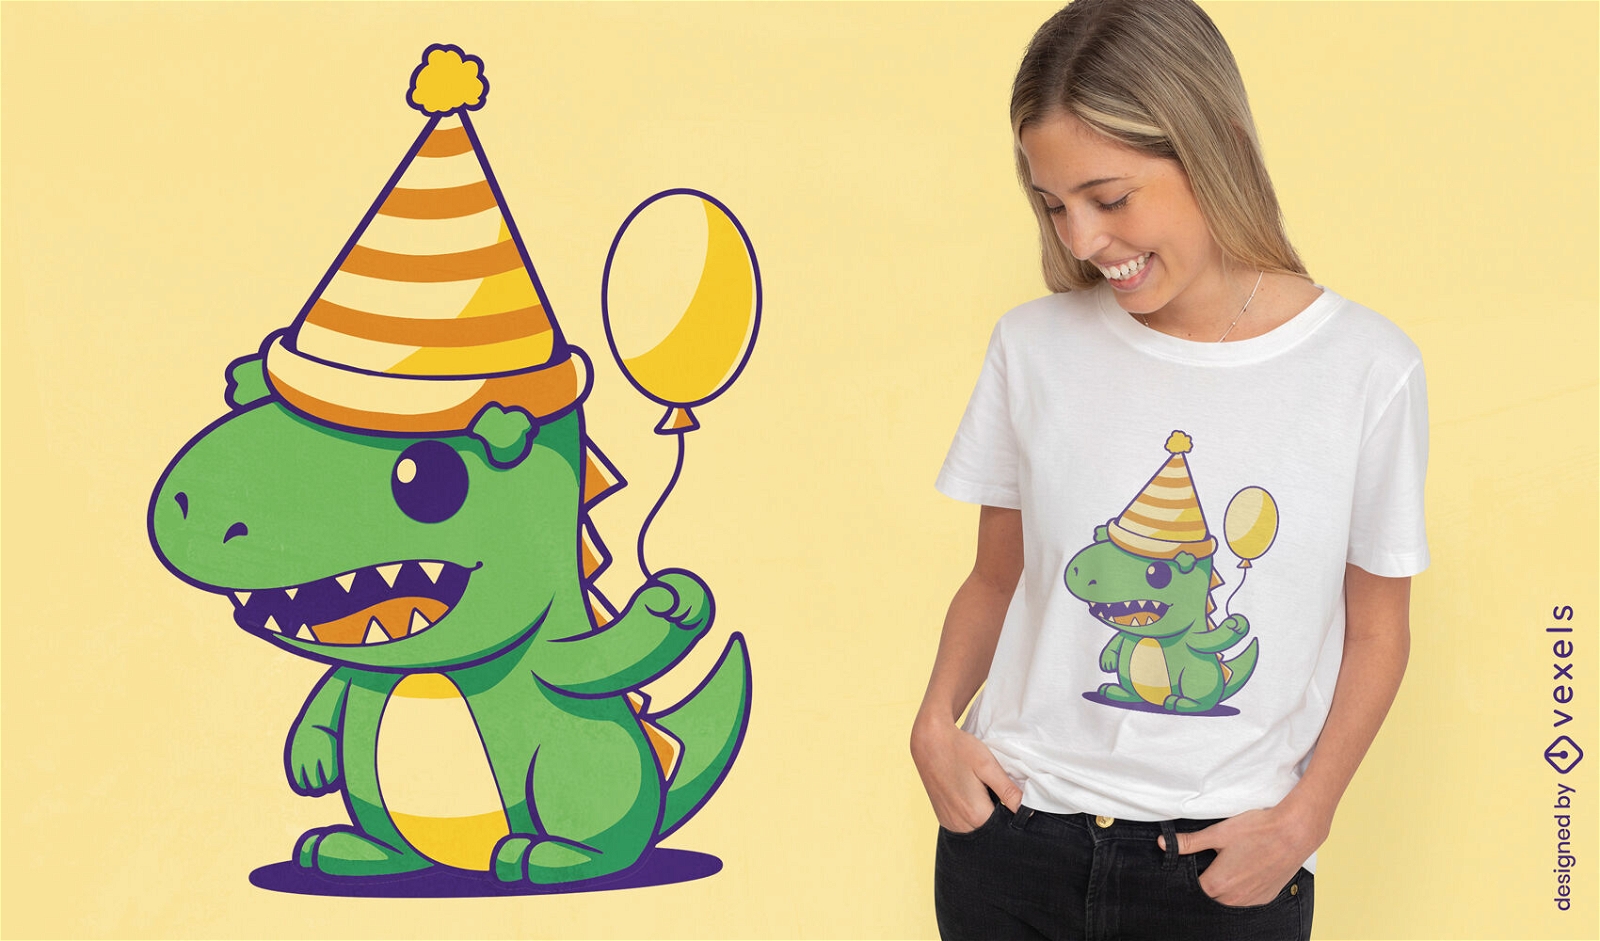 S??es T-Shirt-Design mit Geburtstags-Dinosaurier-Cartoon